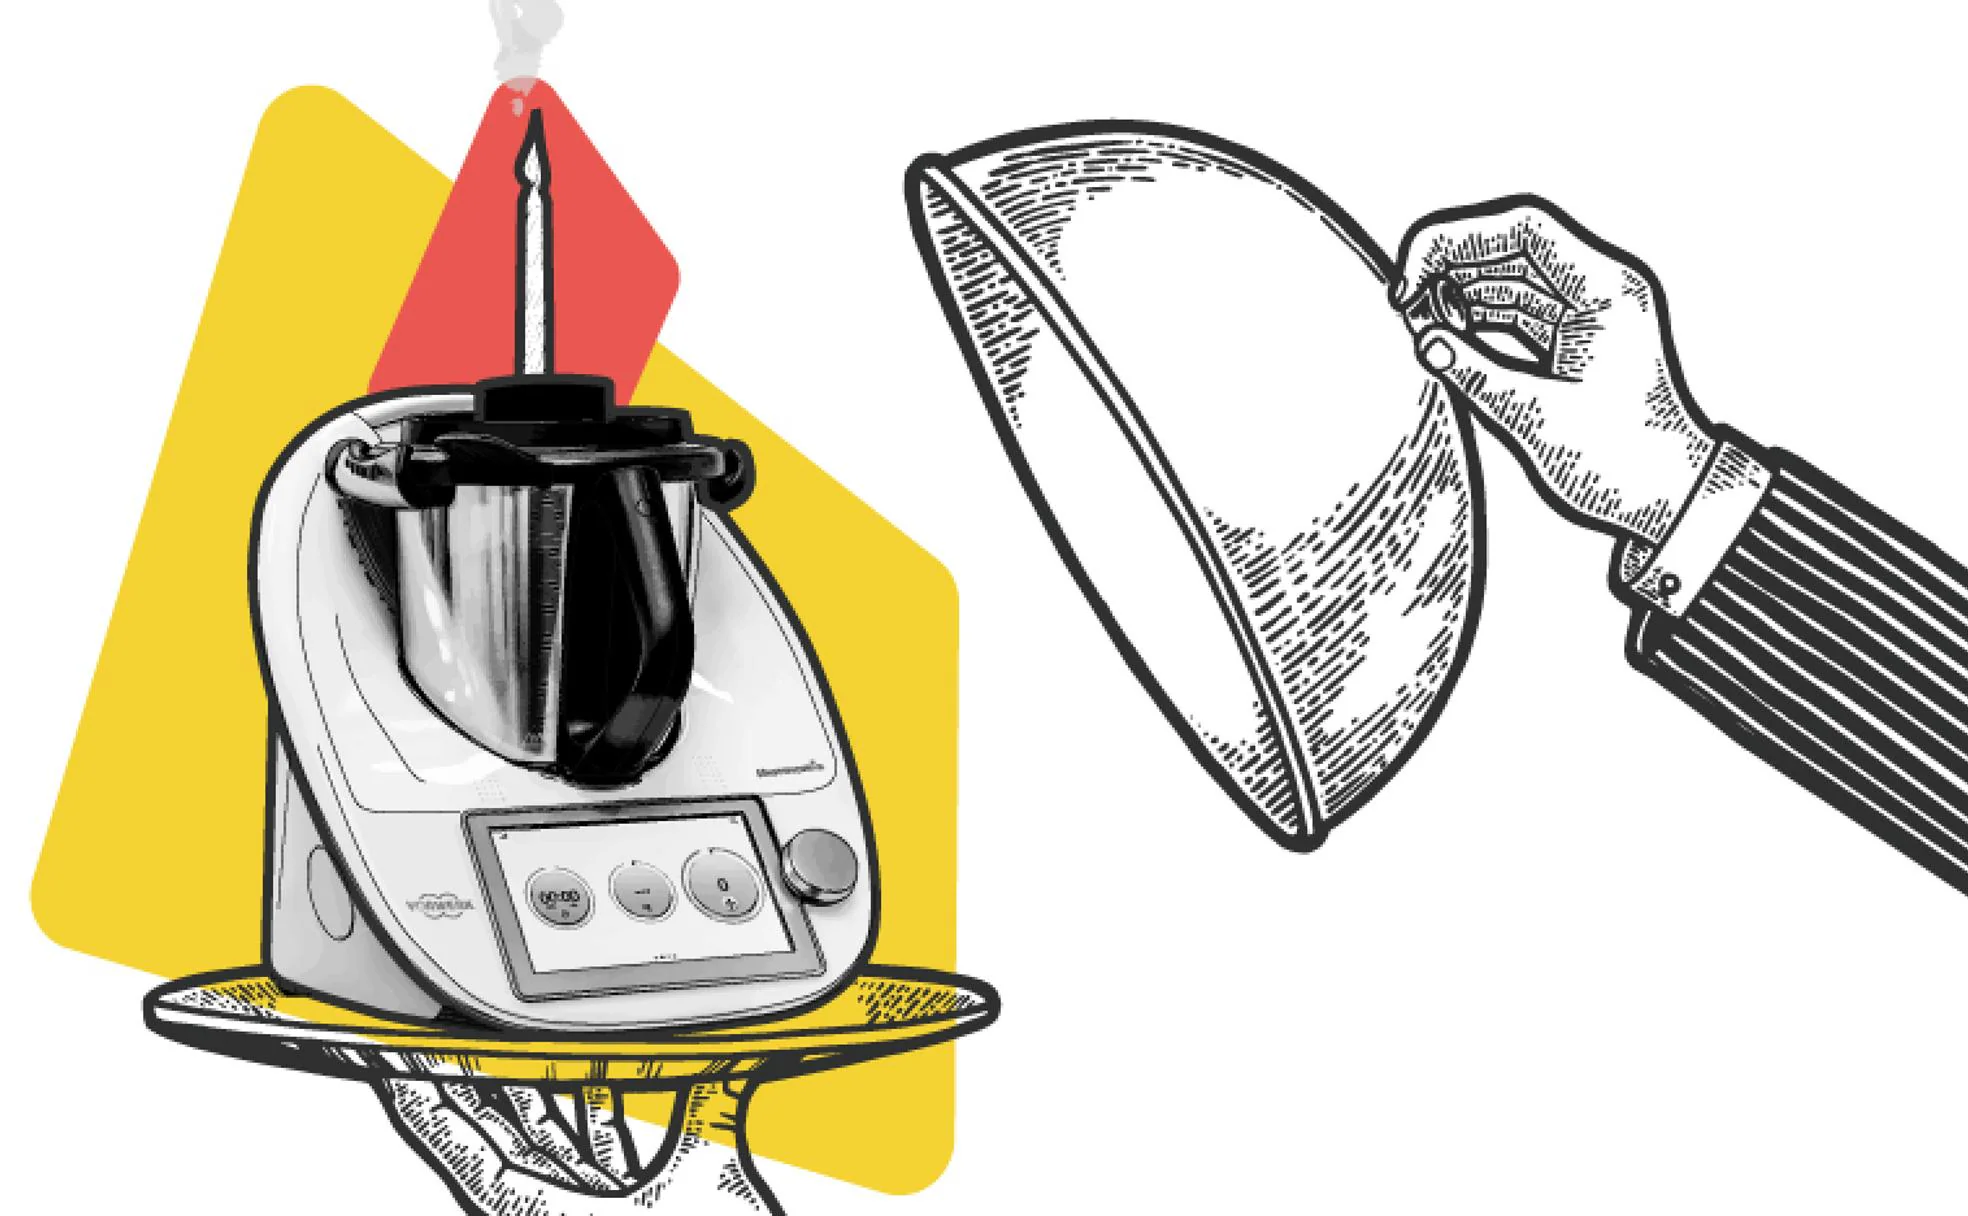 Revolución Thermomix: los secretos del robot de cocina más popular